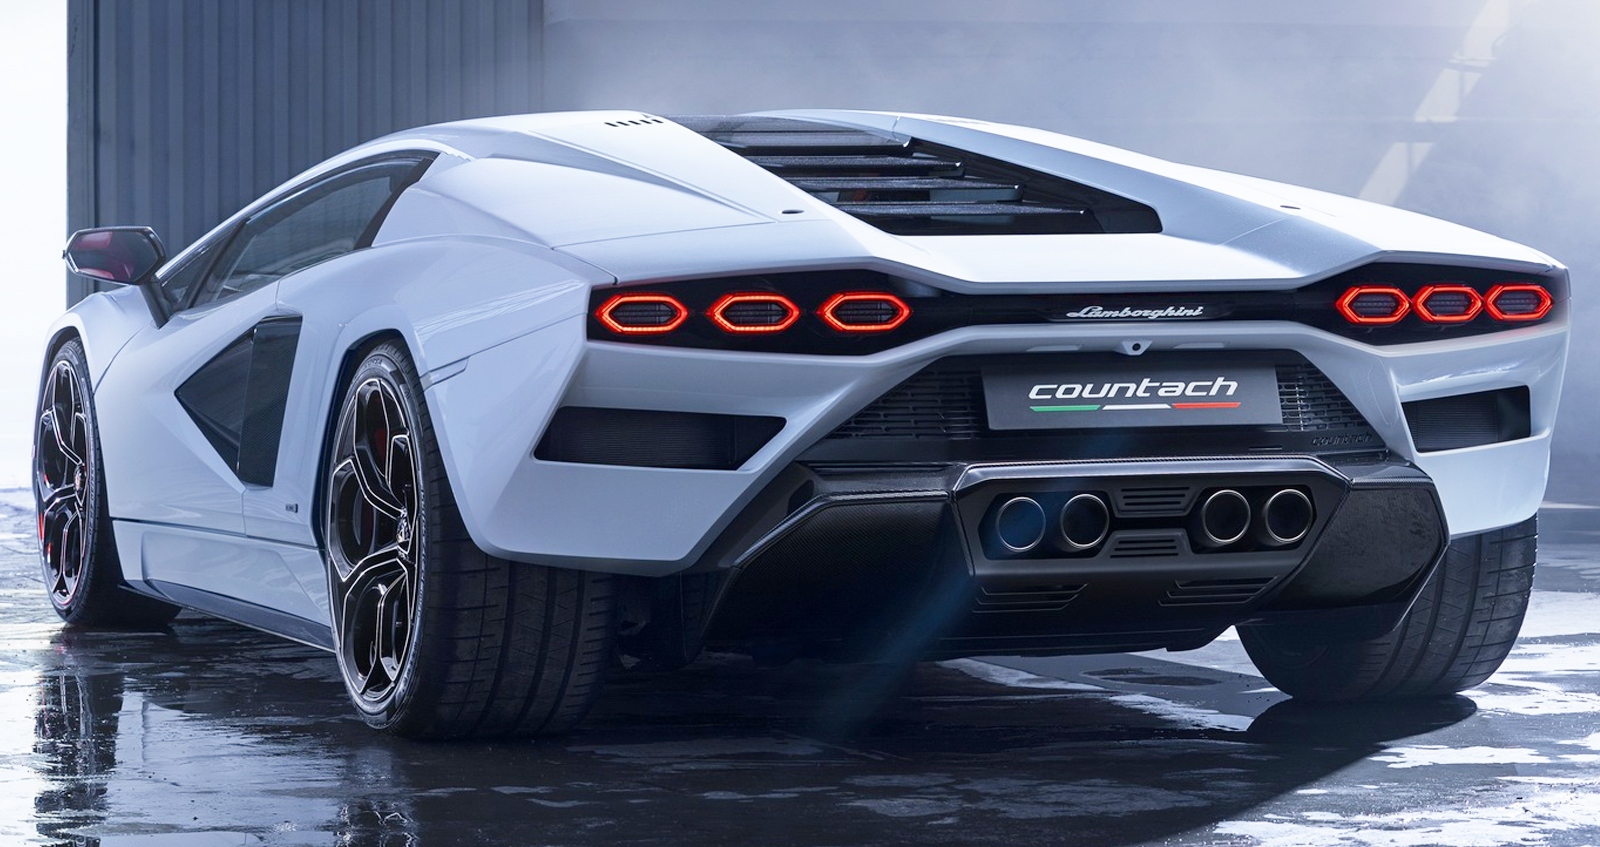 ขายหมดแล้ว Lamborghini Countach LPI 800-4 เพียง 112 คัน ราคา 88 ล้านบาท ในสหรัฐฯ